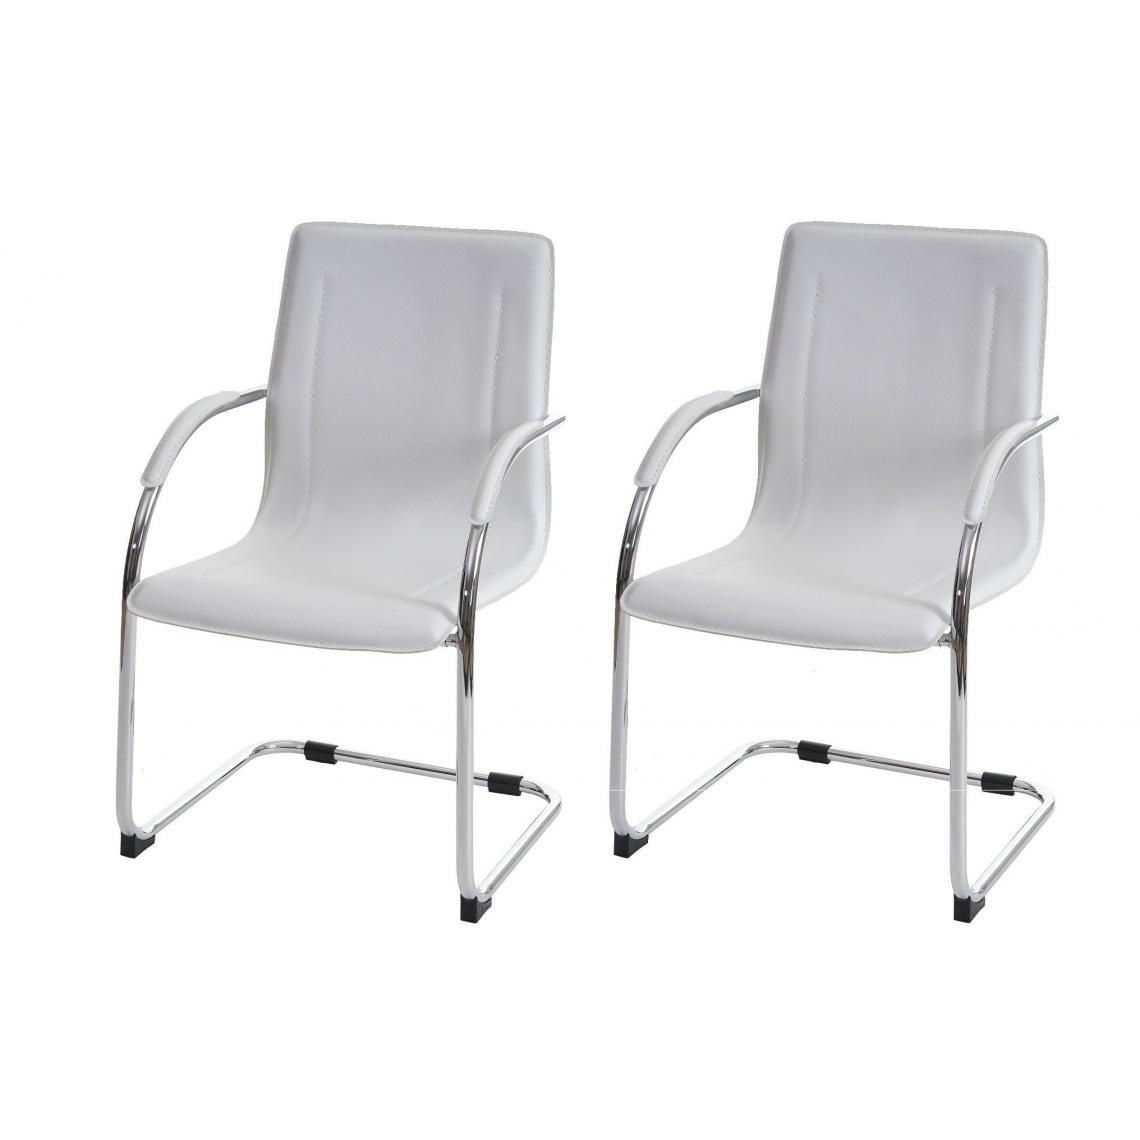 Decoshop26 - Lot de 2 chaises bureau visiteur en simili-cuir blanc avec accoudoir BUR04068 - Chaises